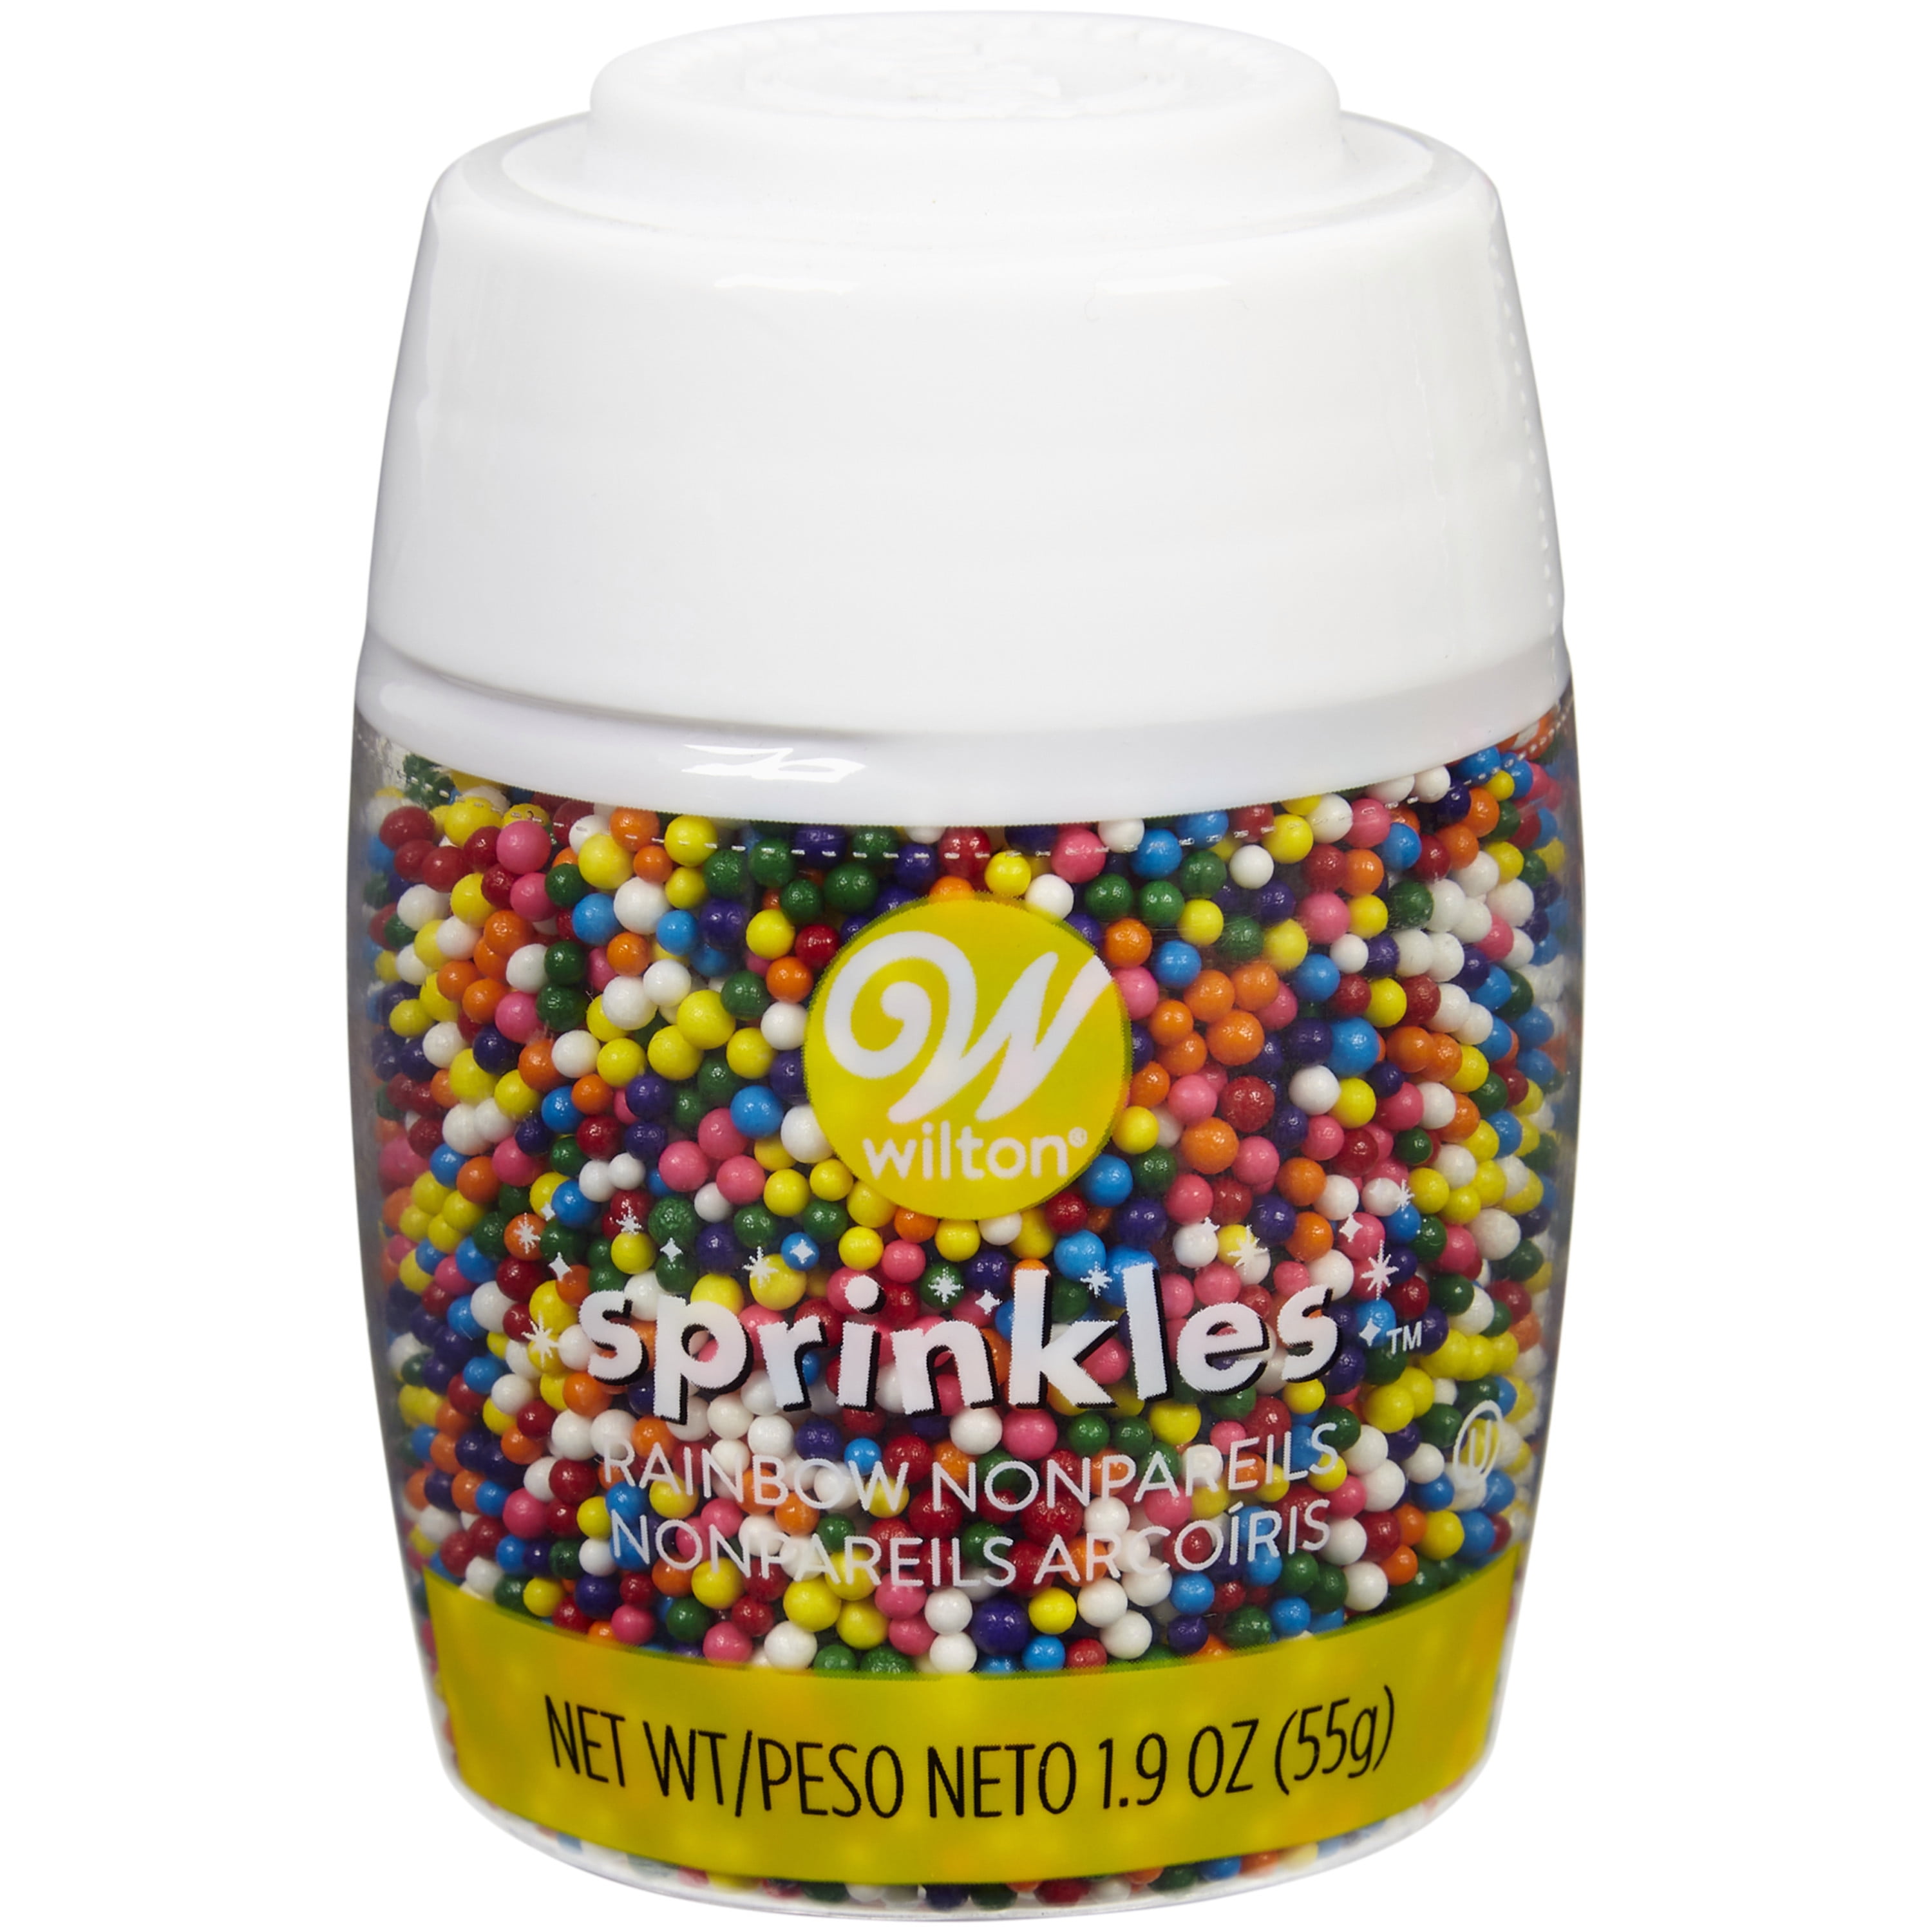 Wilton Traditional Rainbow Nonpareils Sprinkle Mix, 1.9 oz.